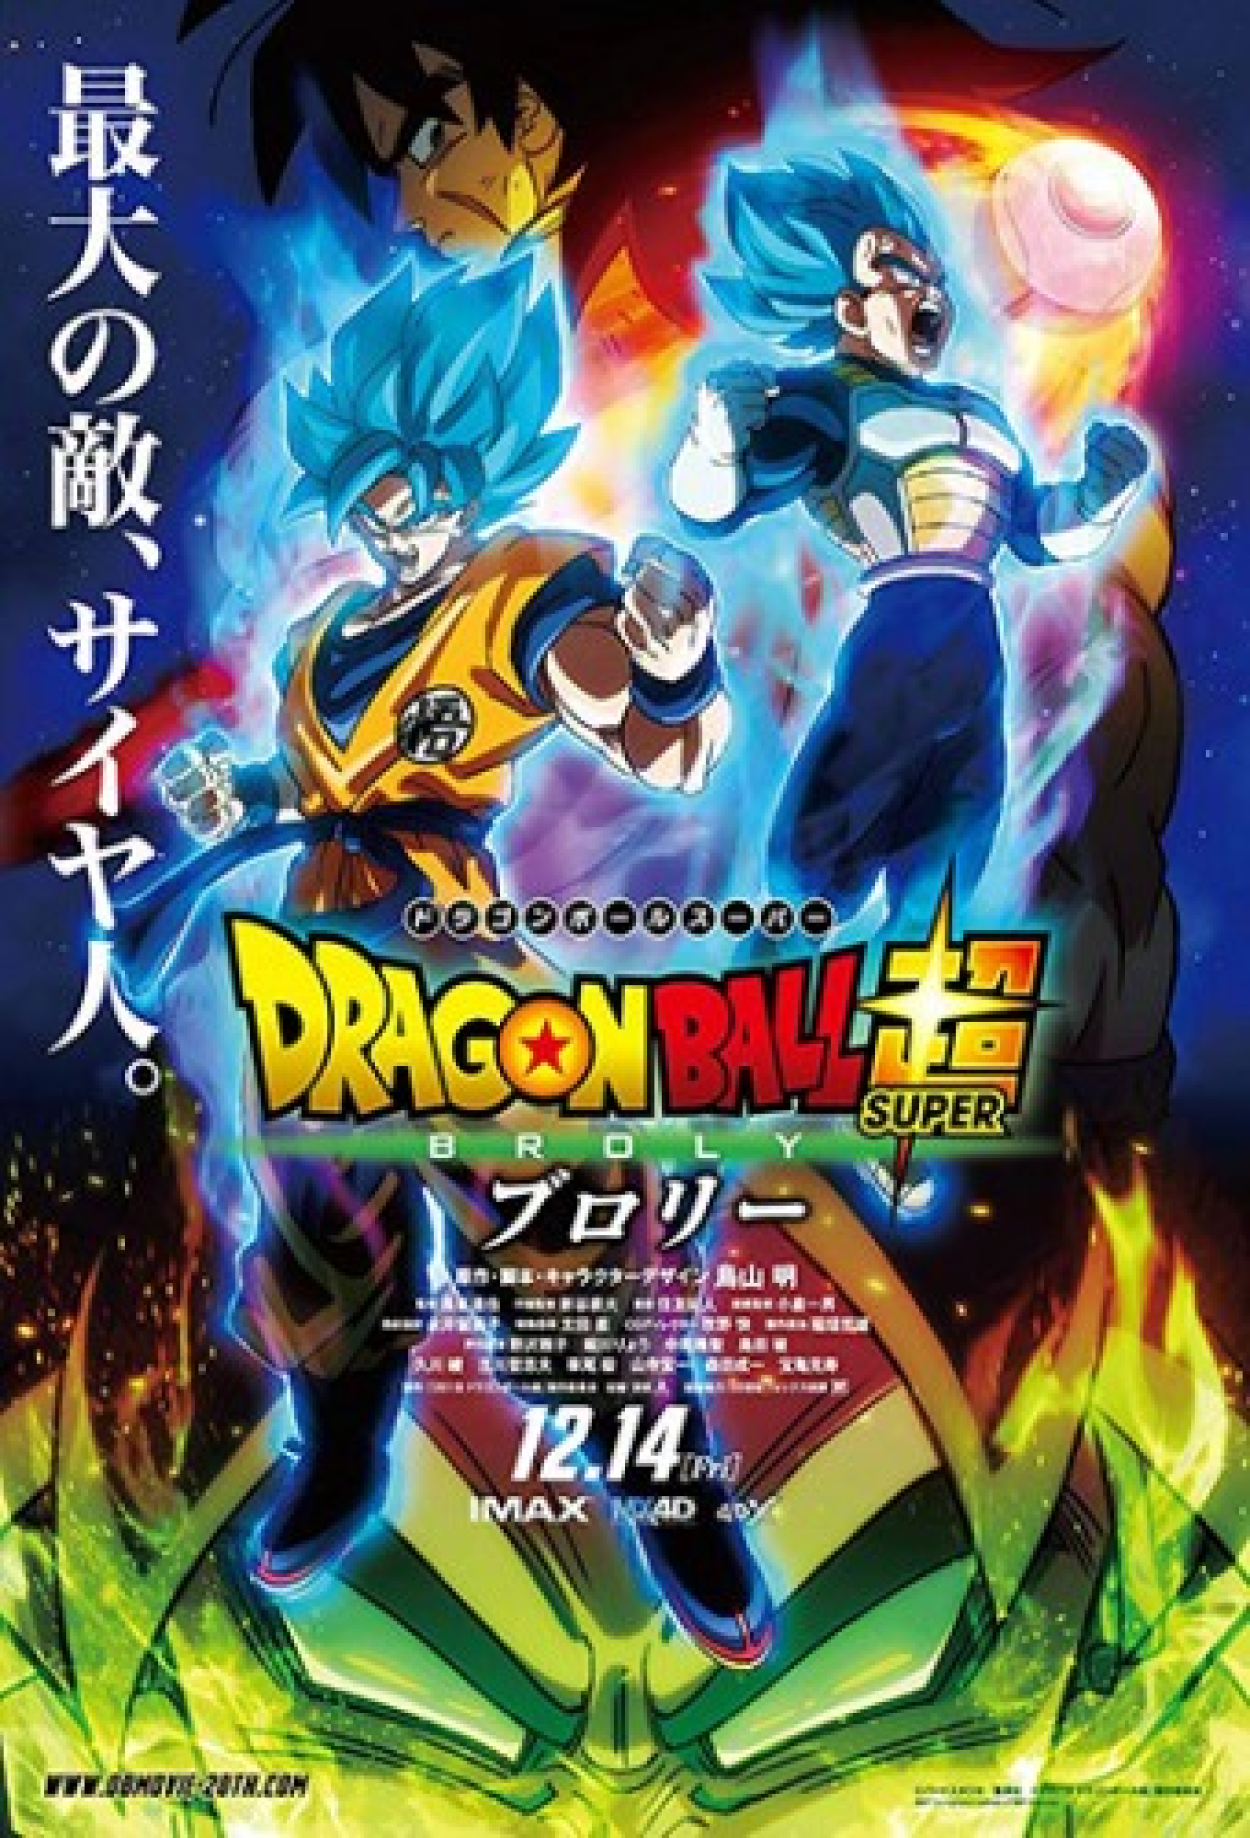 Dragon Ball Z: O Renascimento de F (Filme), Trailer, Sinopse e Curiosidades  - Cinema10